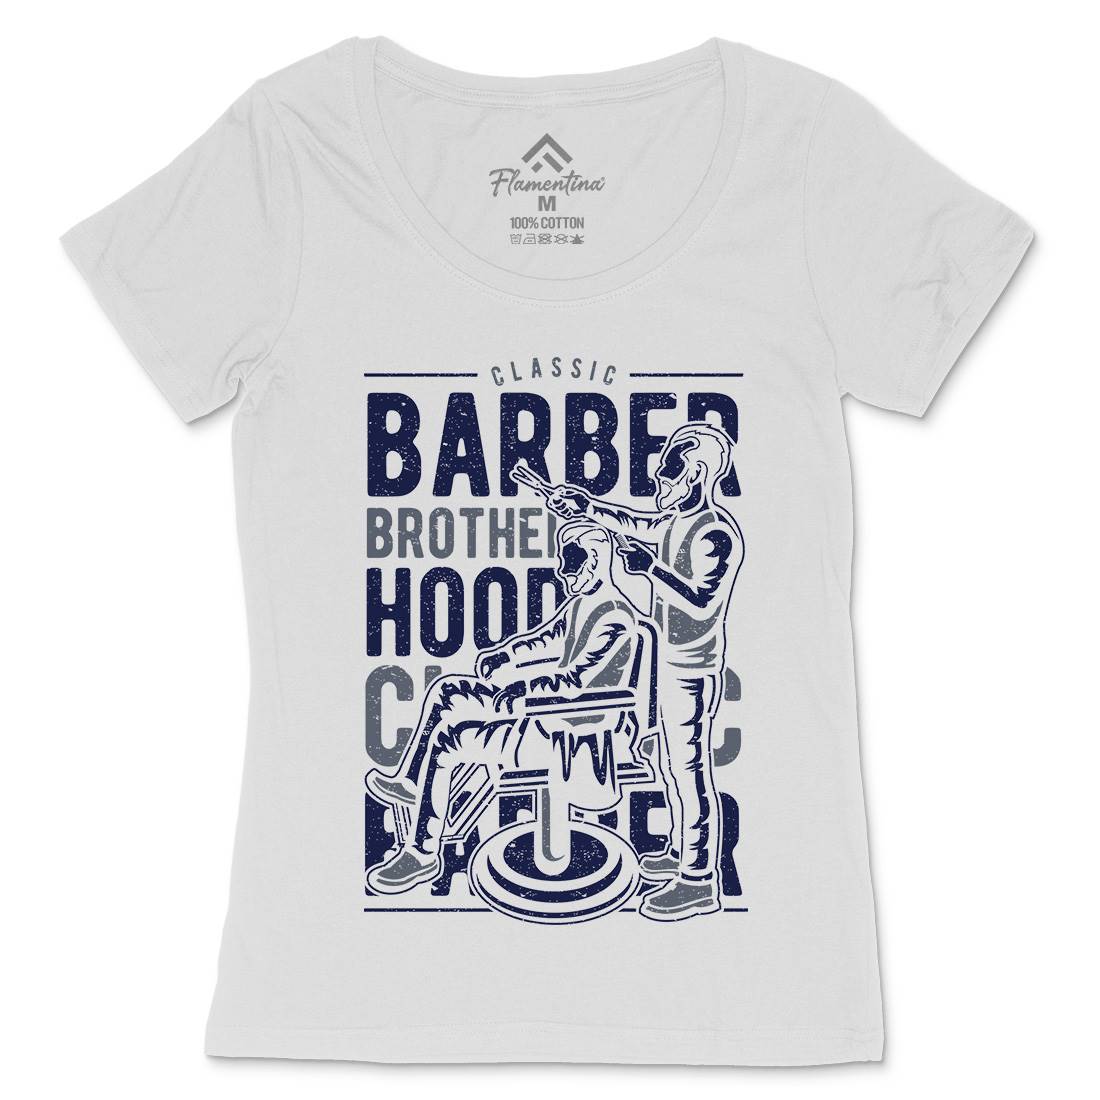 Brotherhood Womens Scoop Neck T-Shirt Barber A009